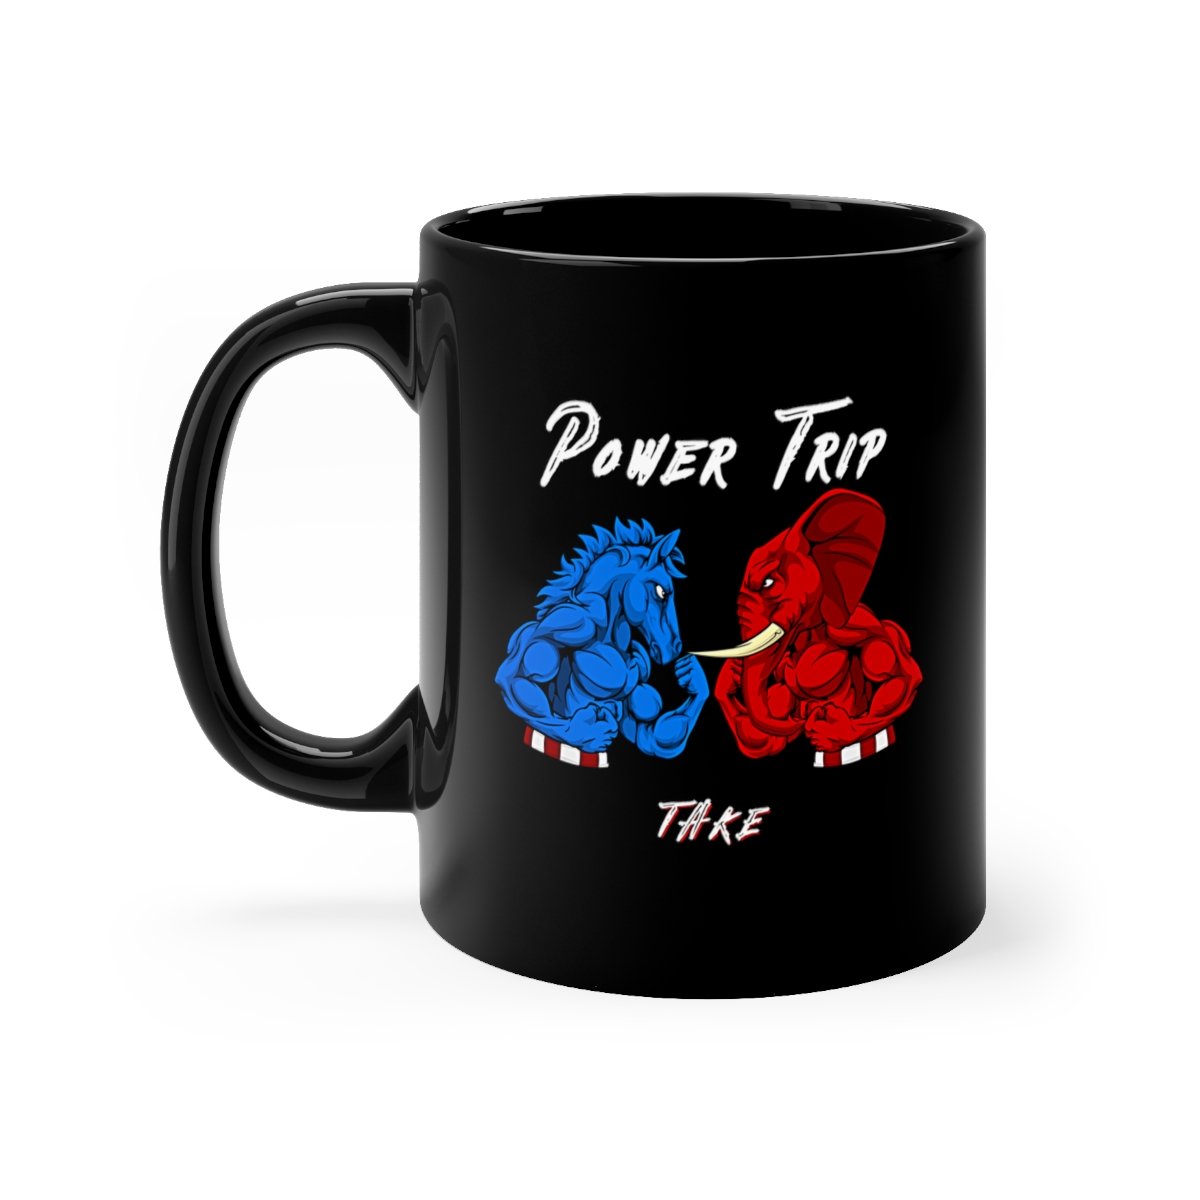 Take – Power Trip 11oz Black mug